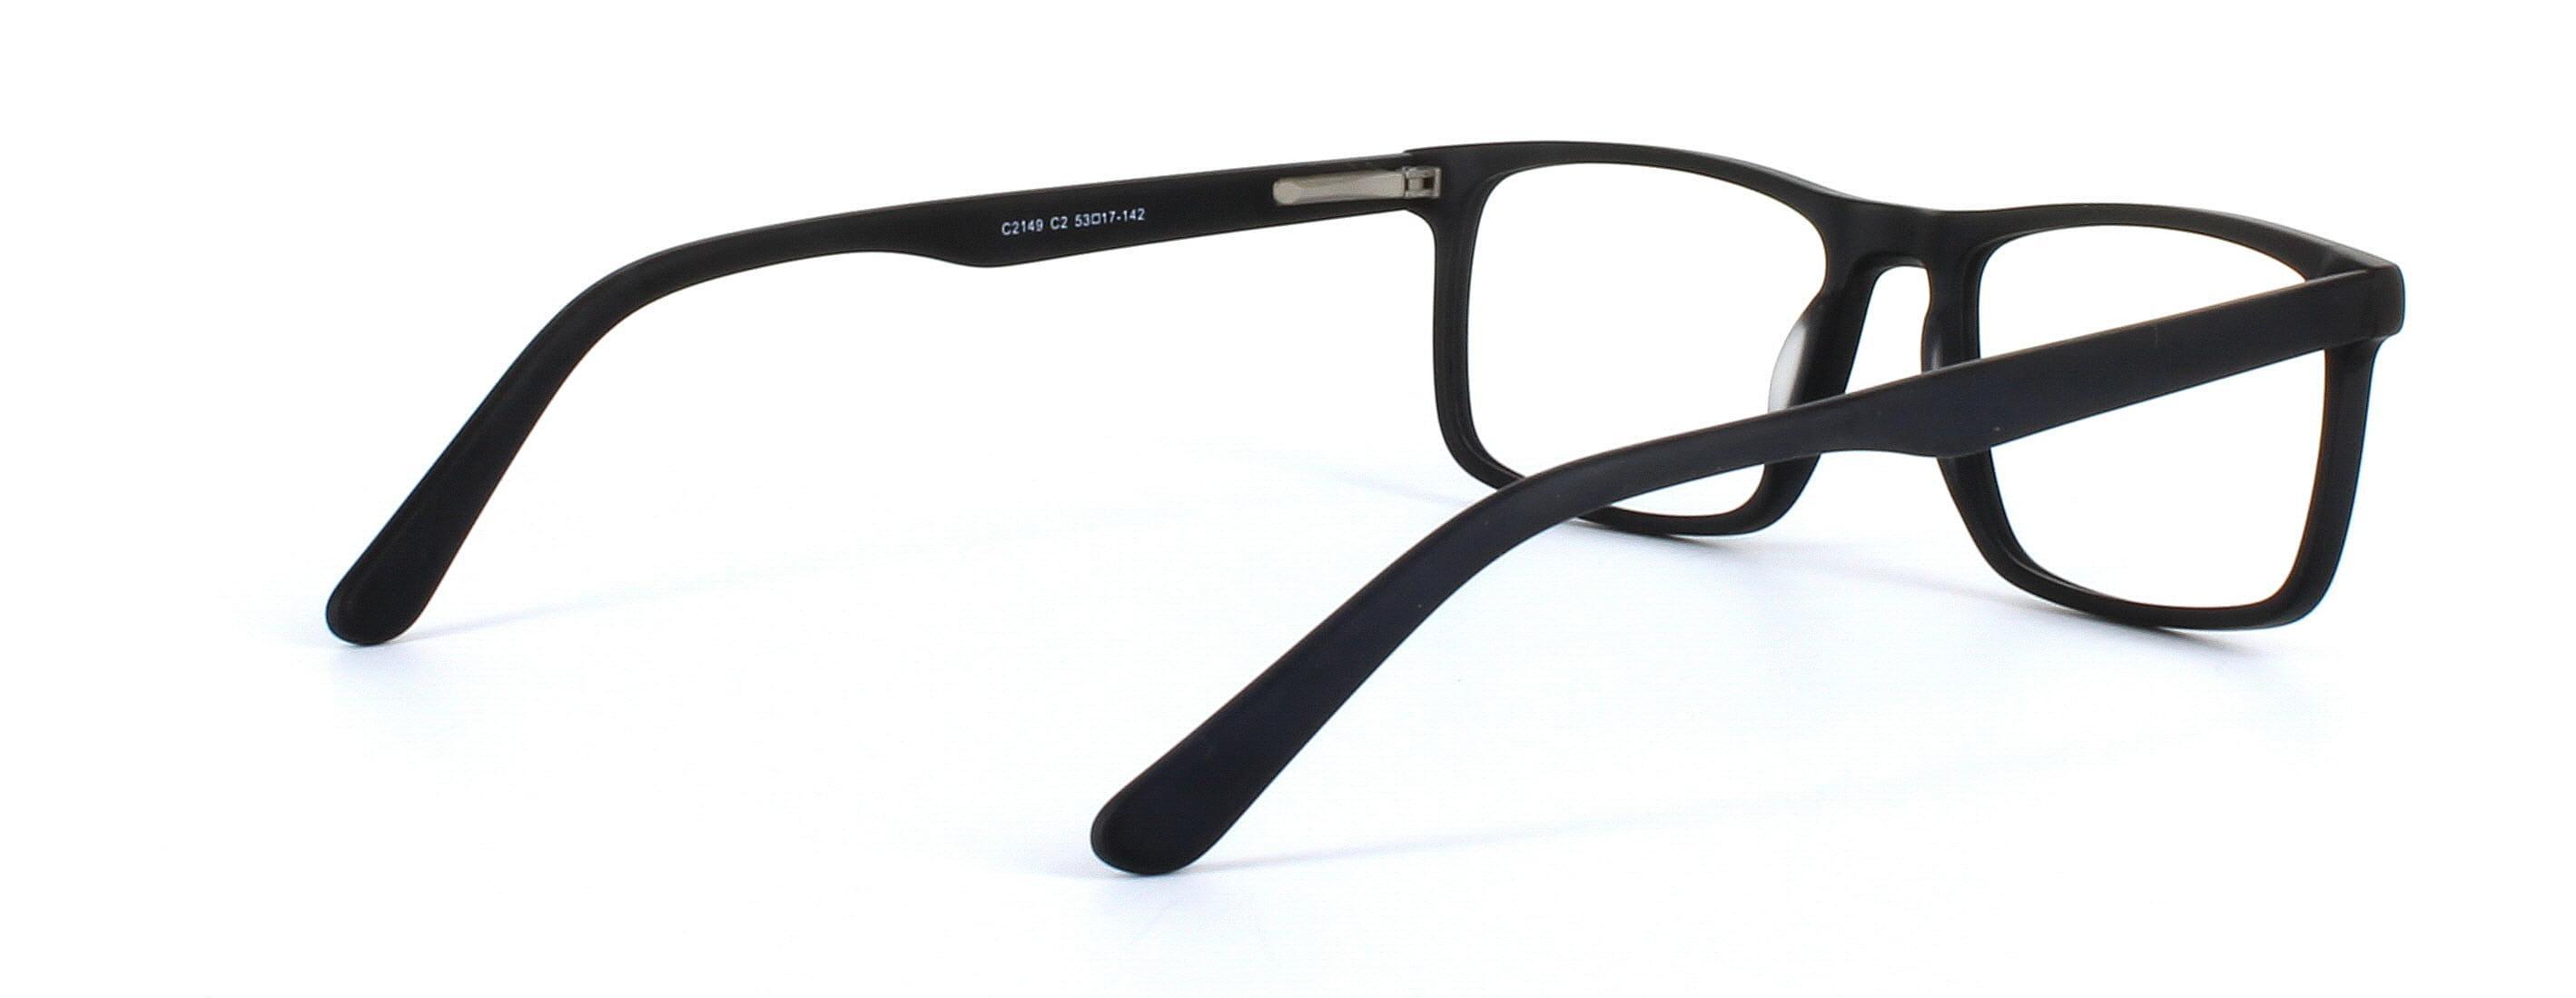 Livadia - unisex acetate glasses in matt black - image view 4